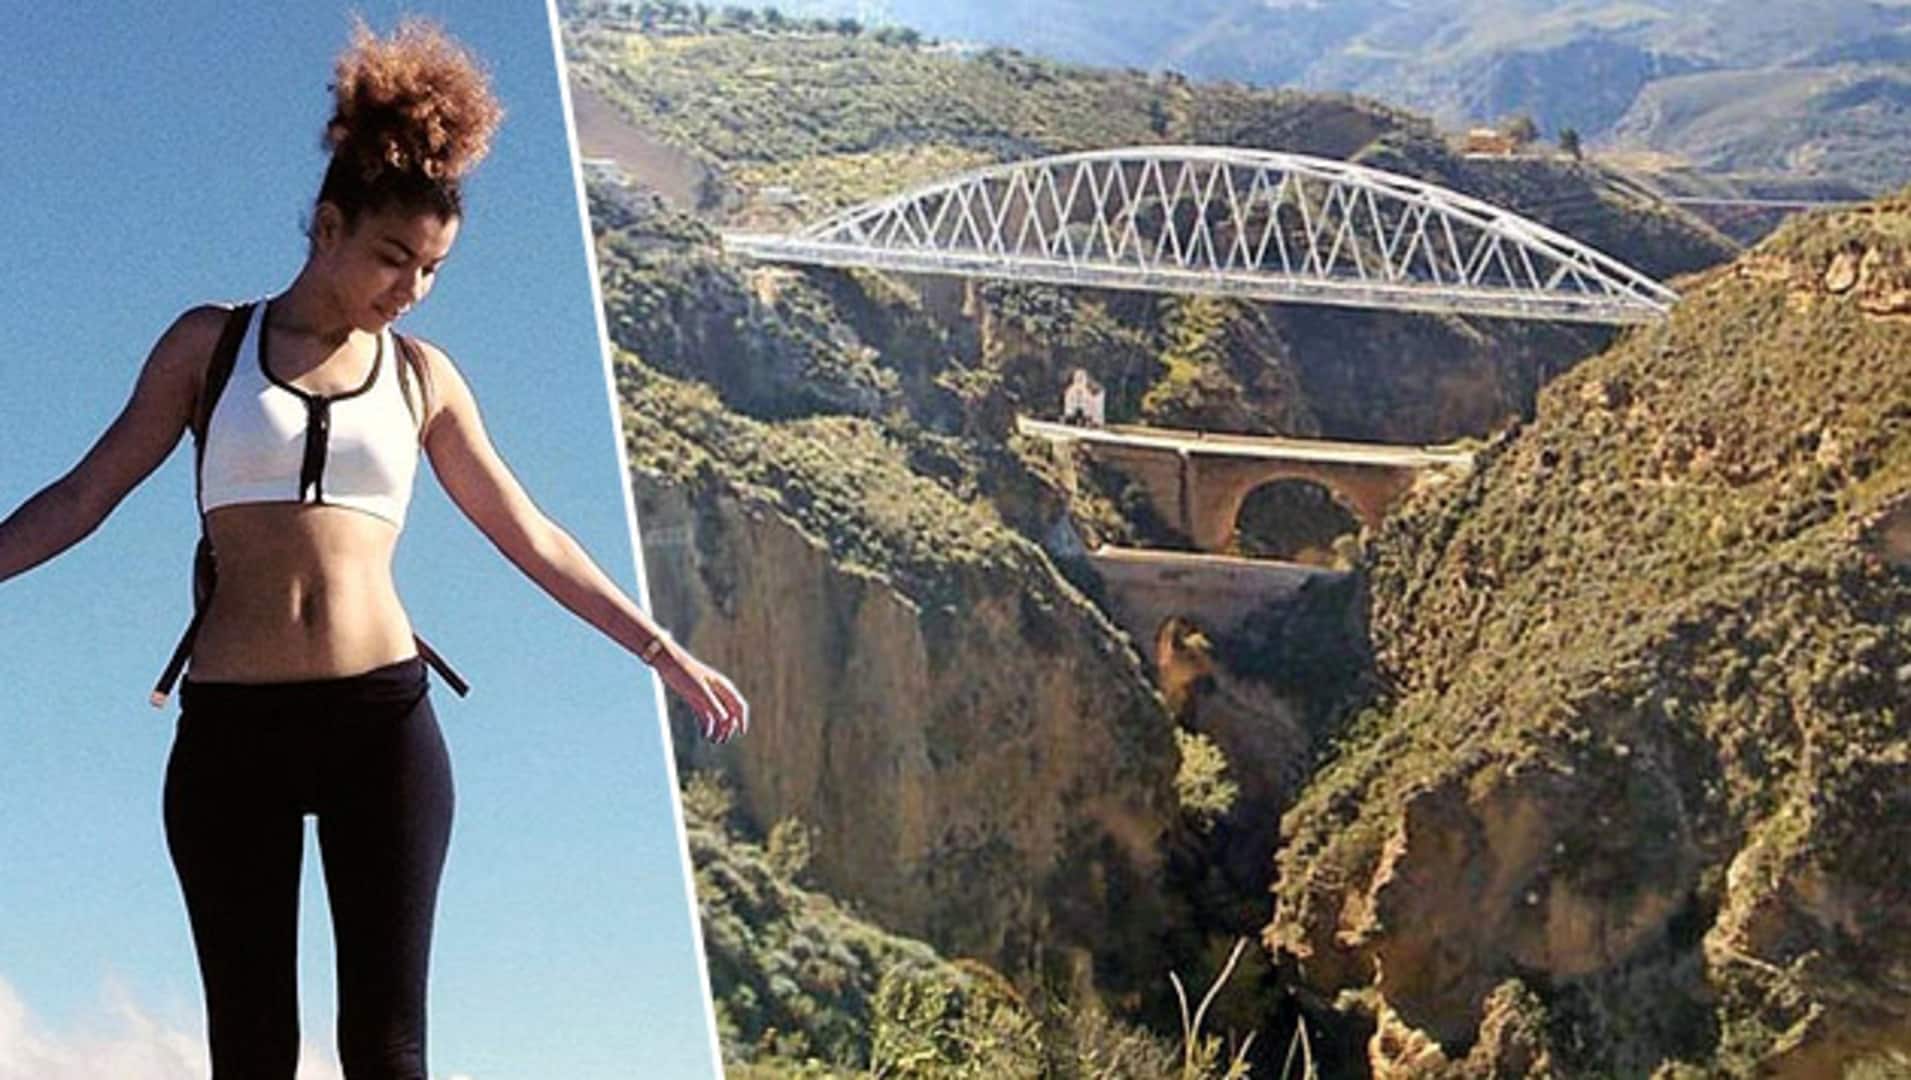 Tragödie in Spanien - Musste Frau sterben, weil Bungee-Seil zu lang war?